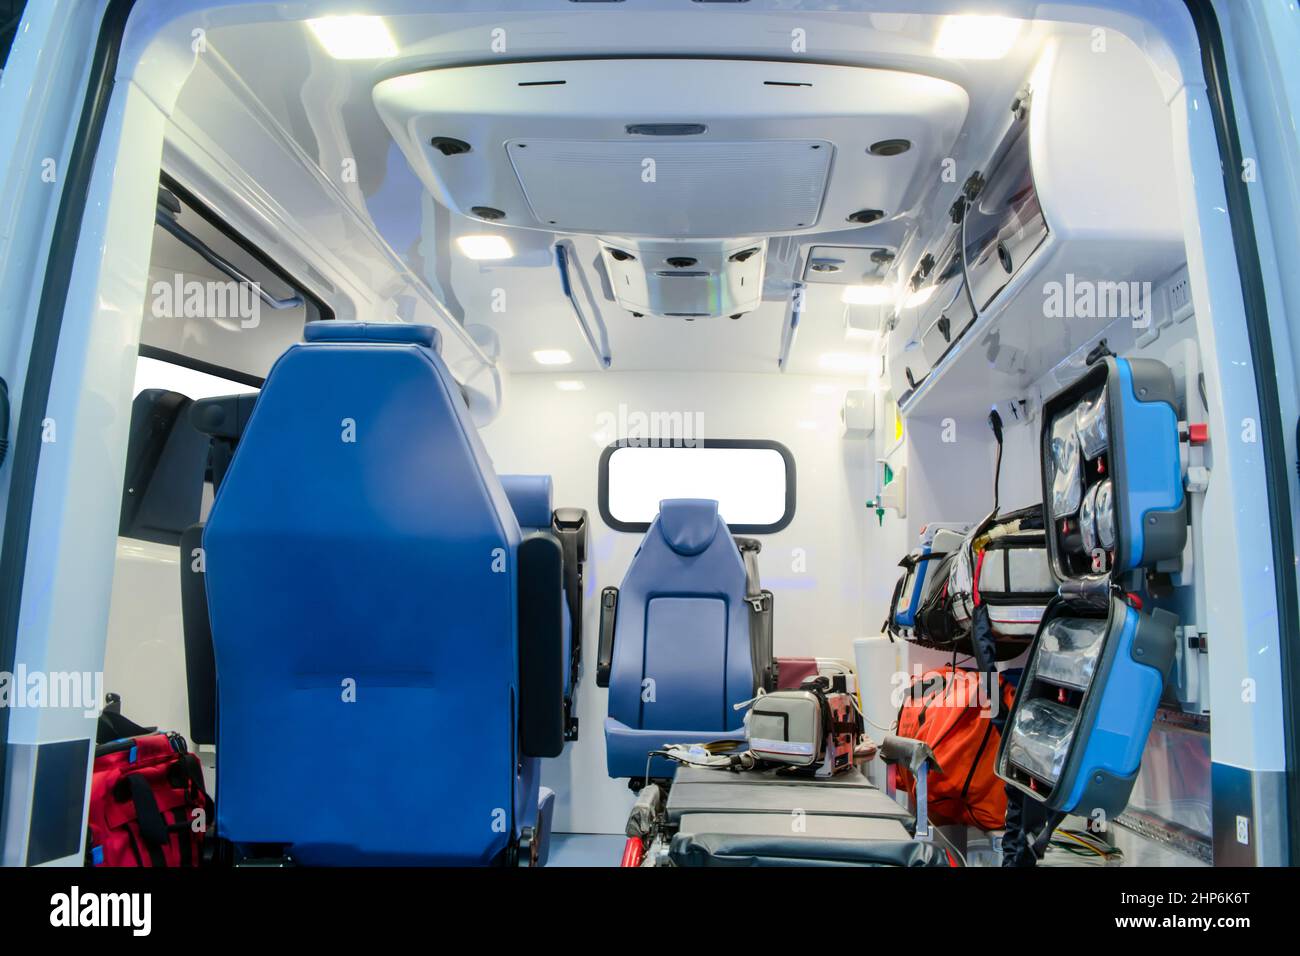 All'interno di un'automobile dell'ambulanza con l'apparecchiatura medica per aiutare i pazienti prima della consegna all'ospedale Foto Stock